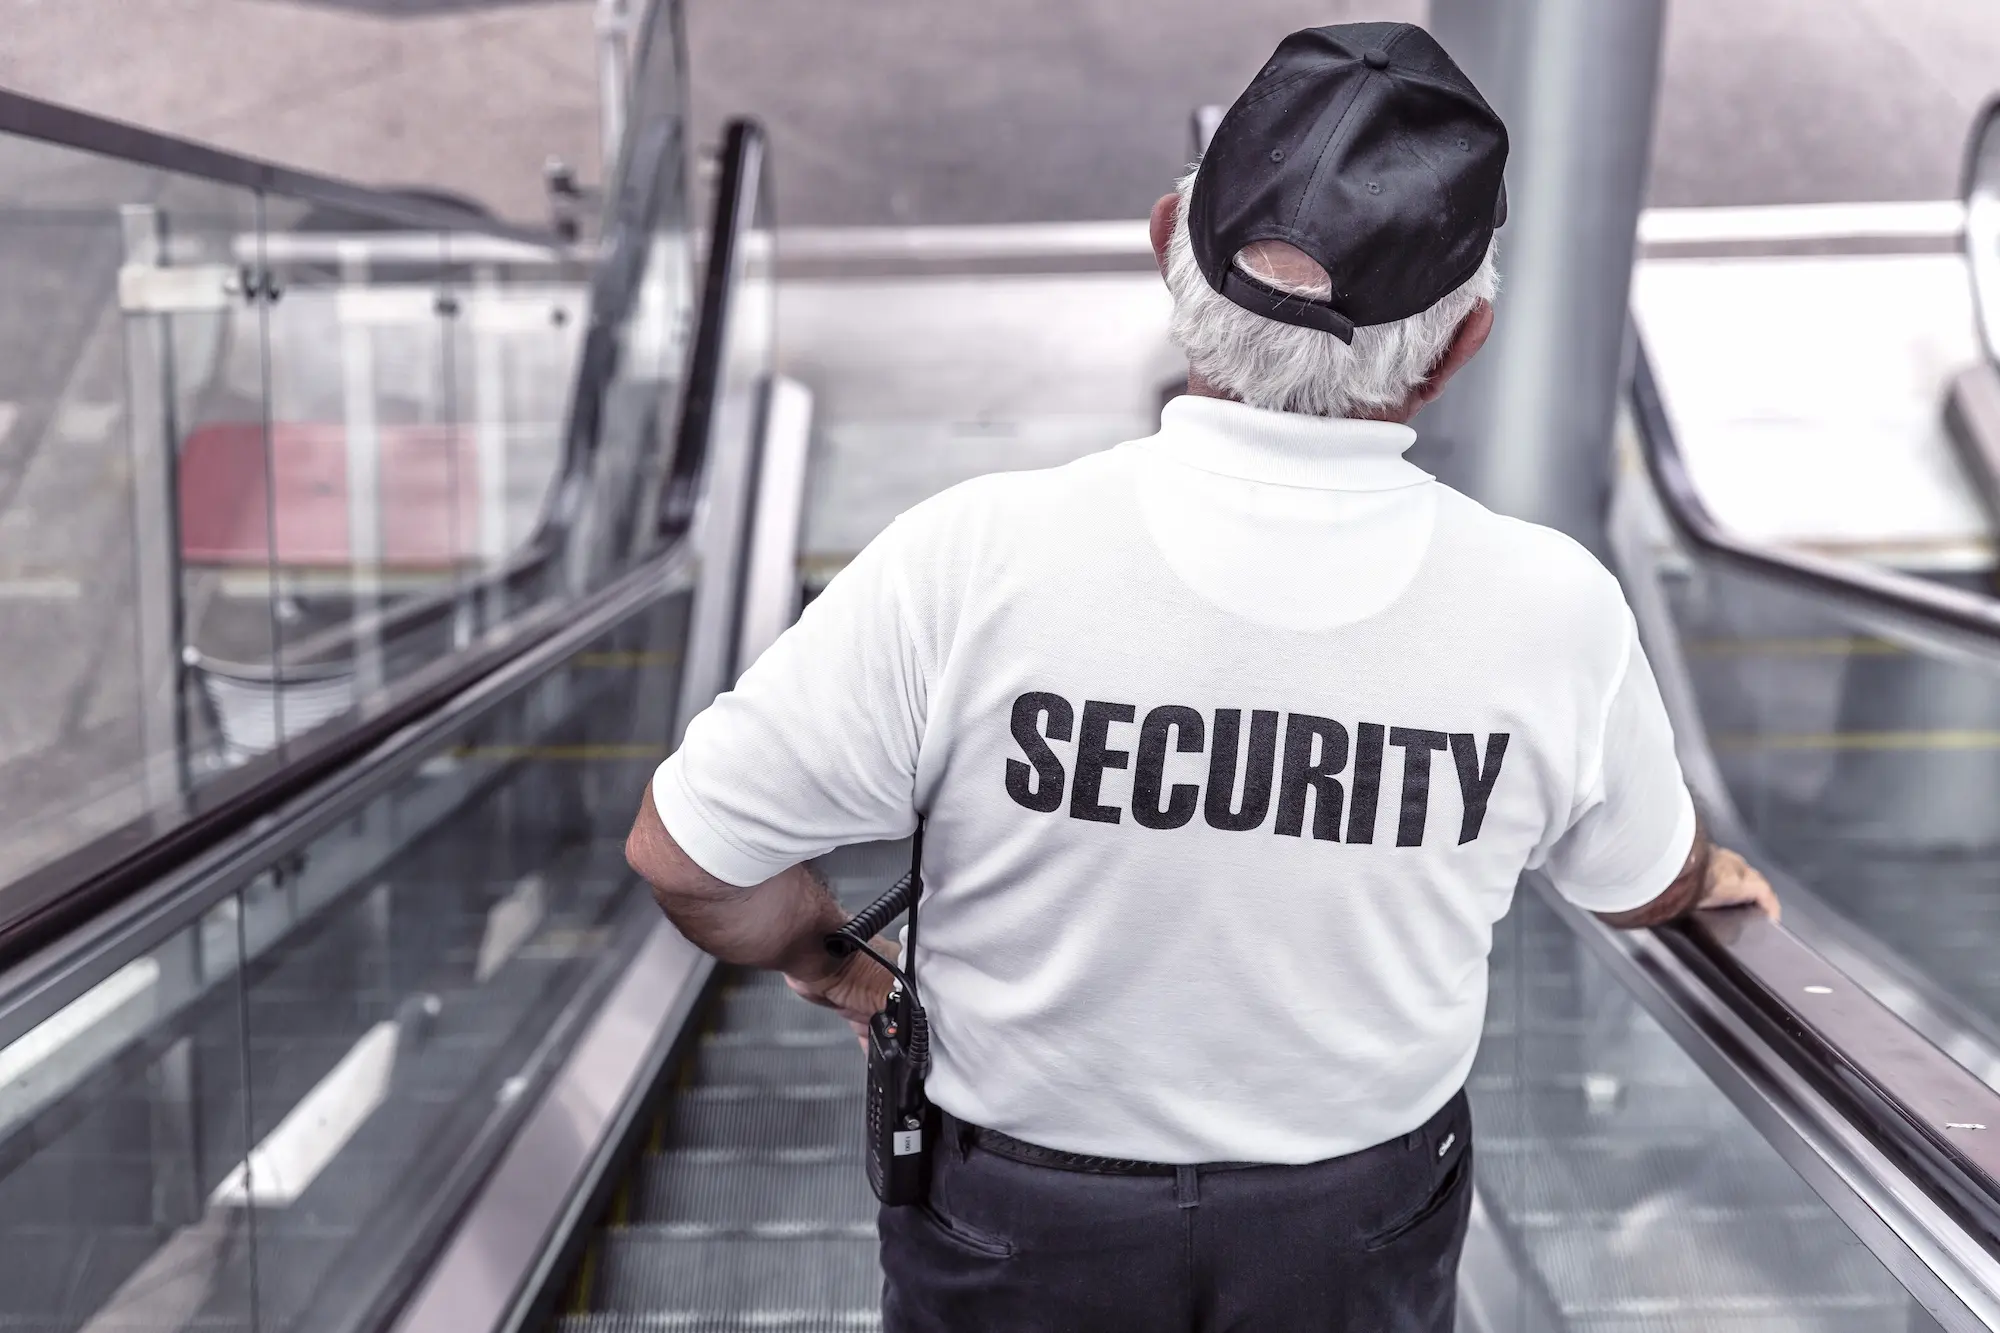 Guardia de seguridad - empresas de seguridad privada - CertificadoElectronico.es